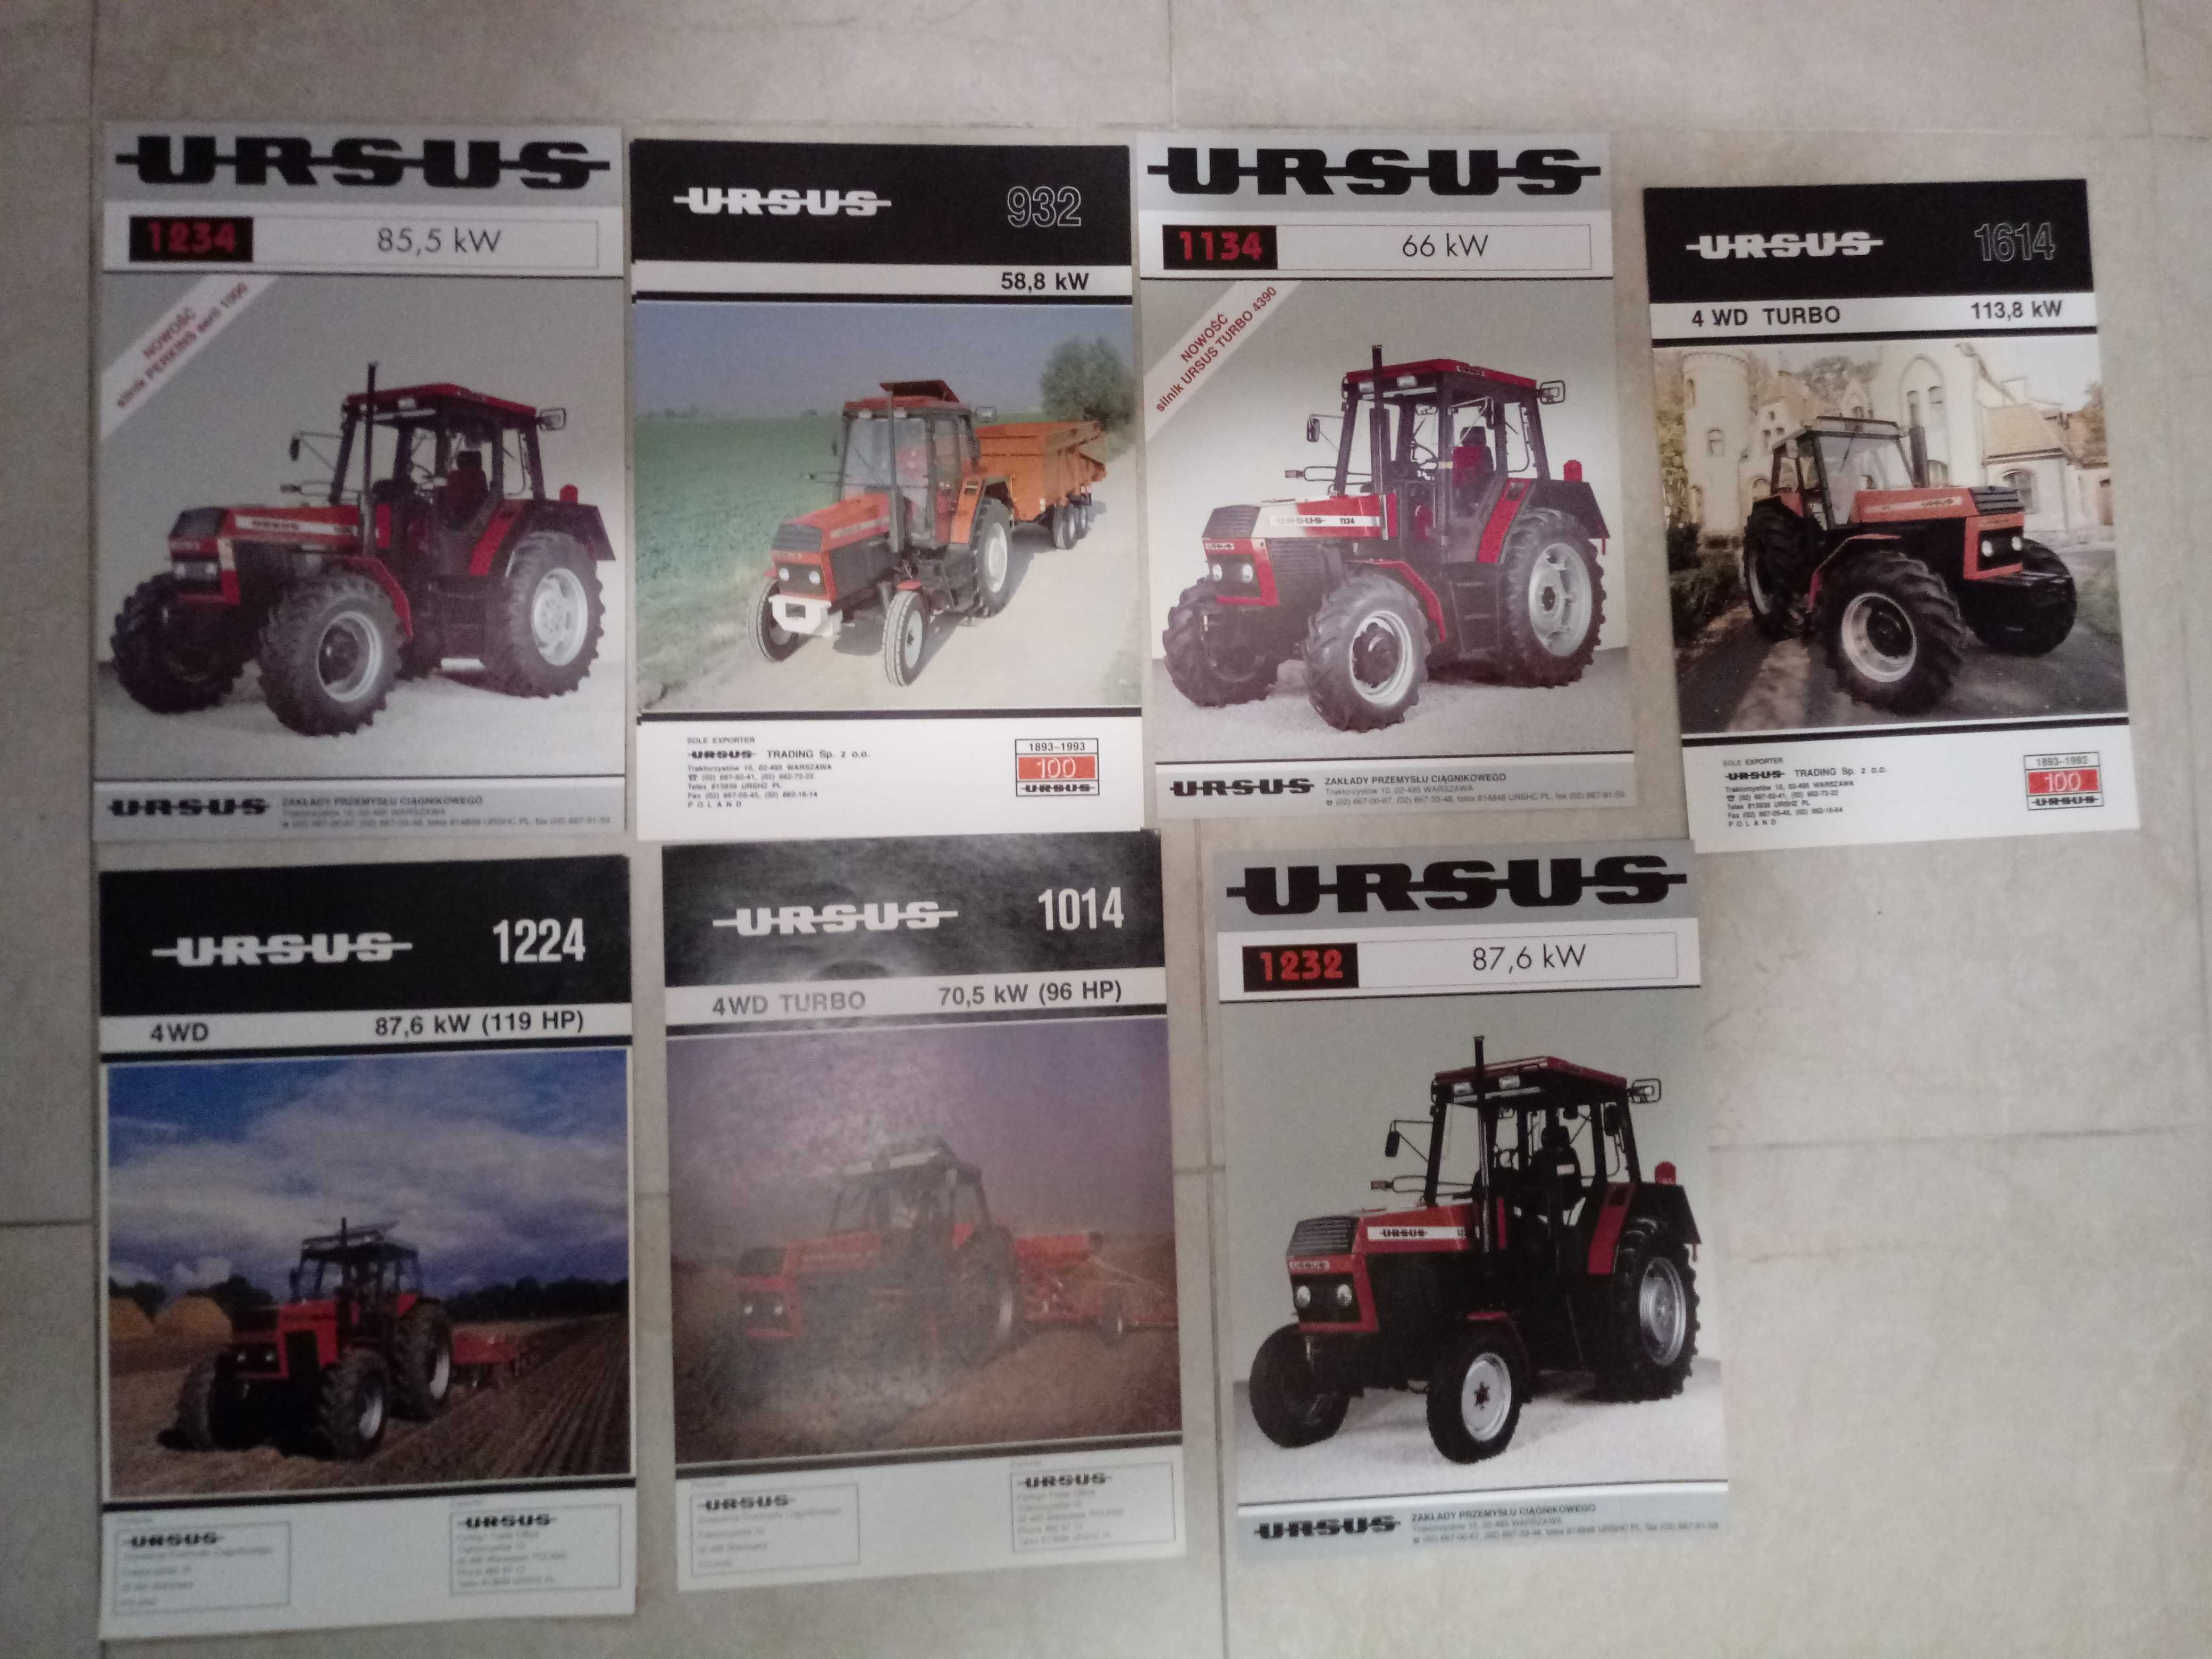 Prospekt URSUS zestaw 7 sztuk bez płyty CD seria ciężka